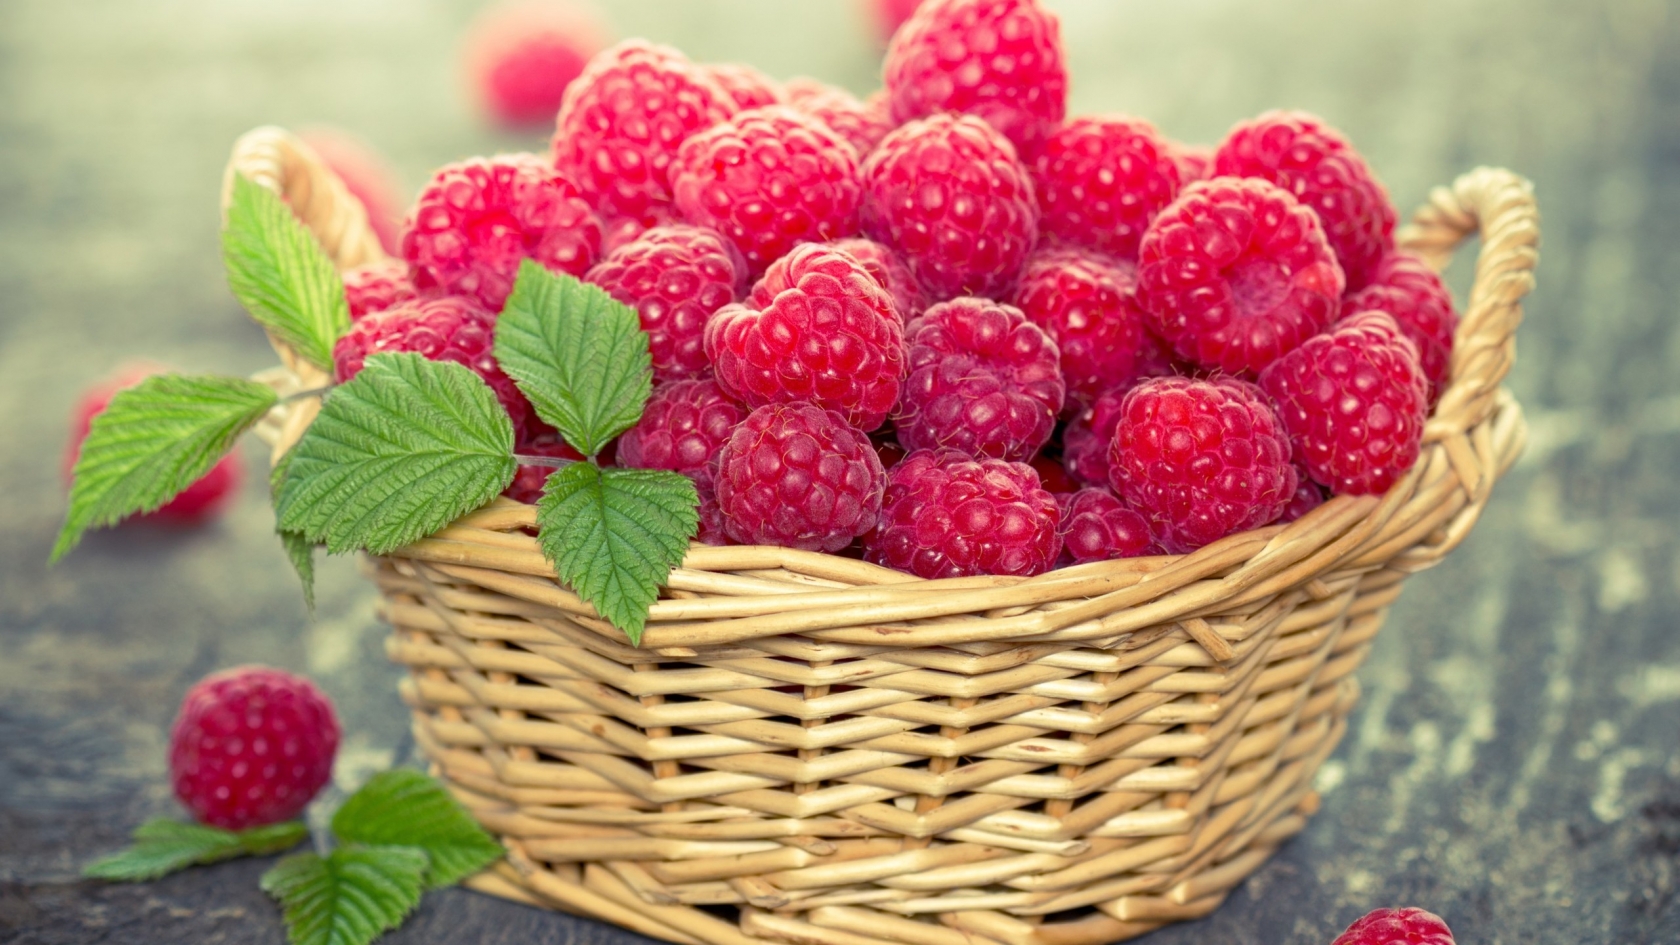 Basket of Raspberries for 1680 x 945 HDTV resolution